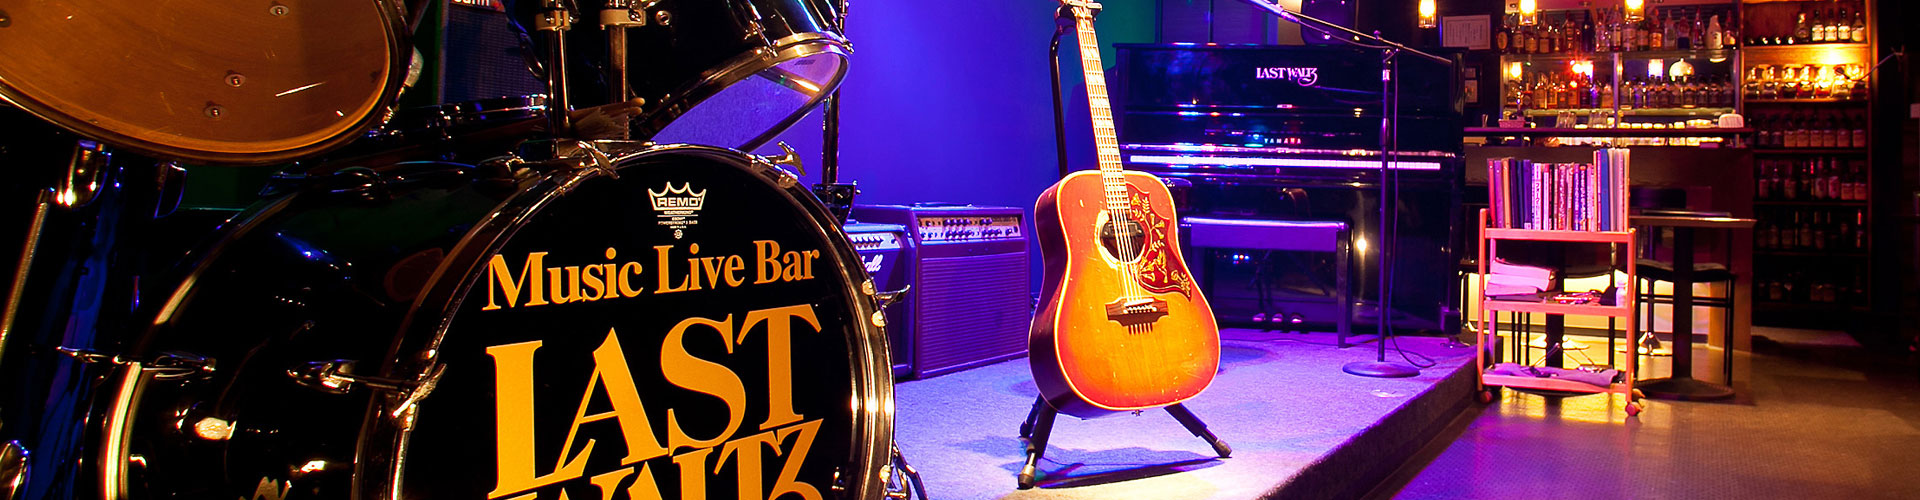 ドラムセットとギターの置かれた店内ステージの写真